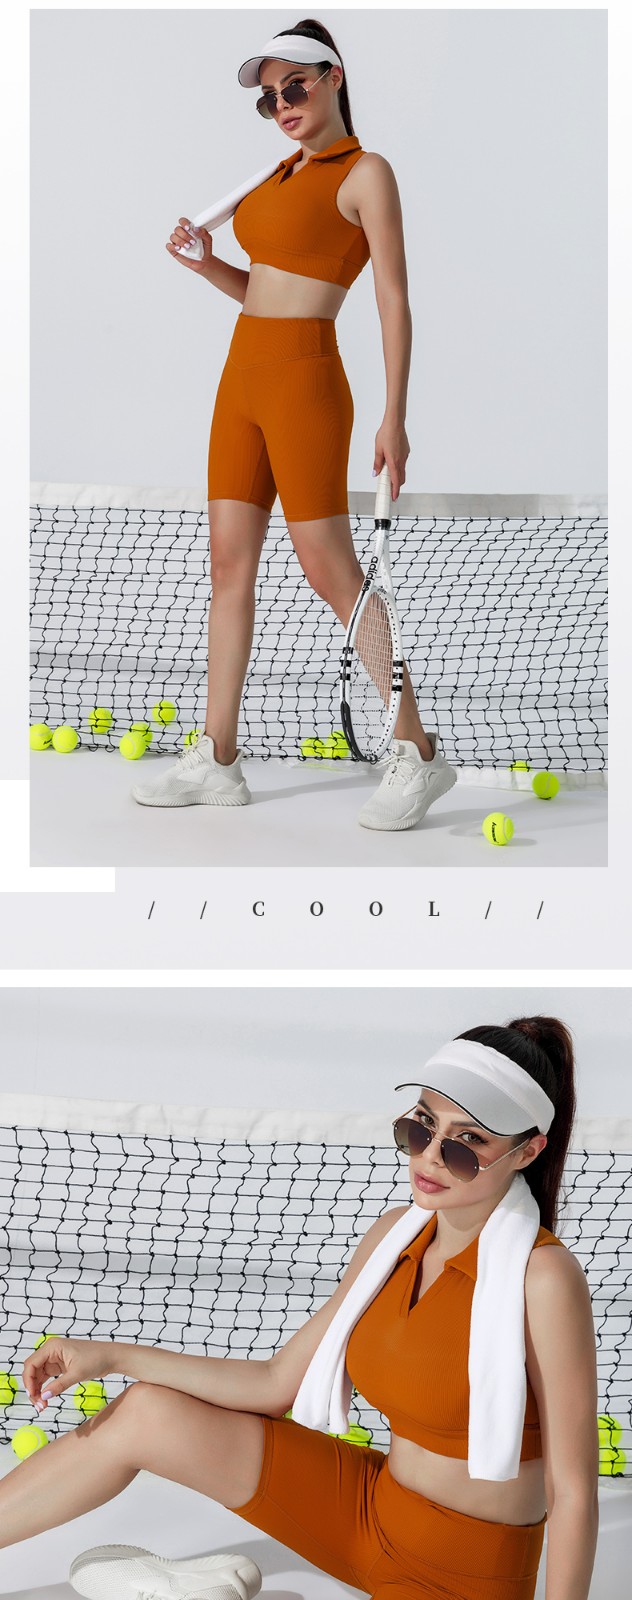 INGOR tennis wear ladies supplier for girls-4